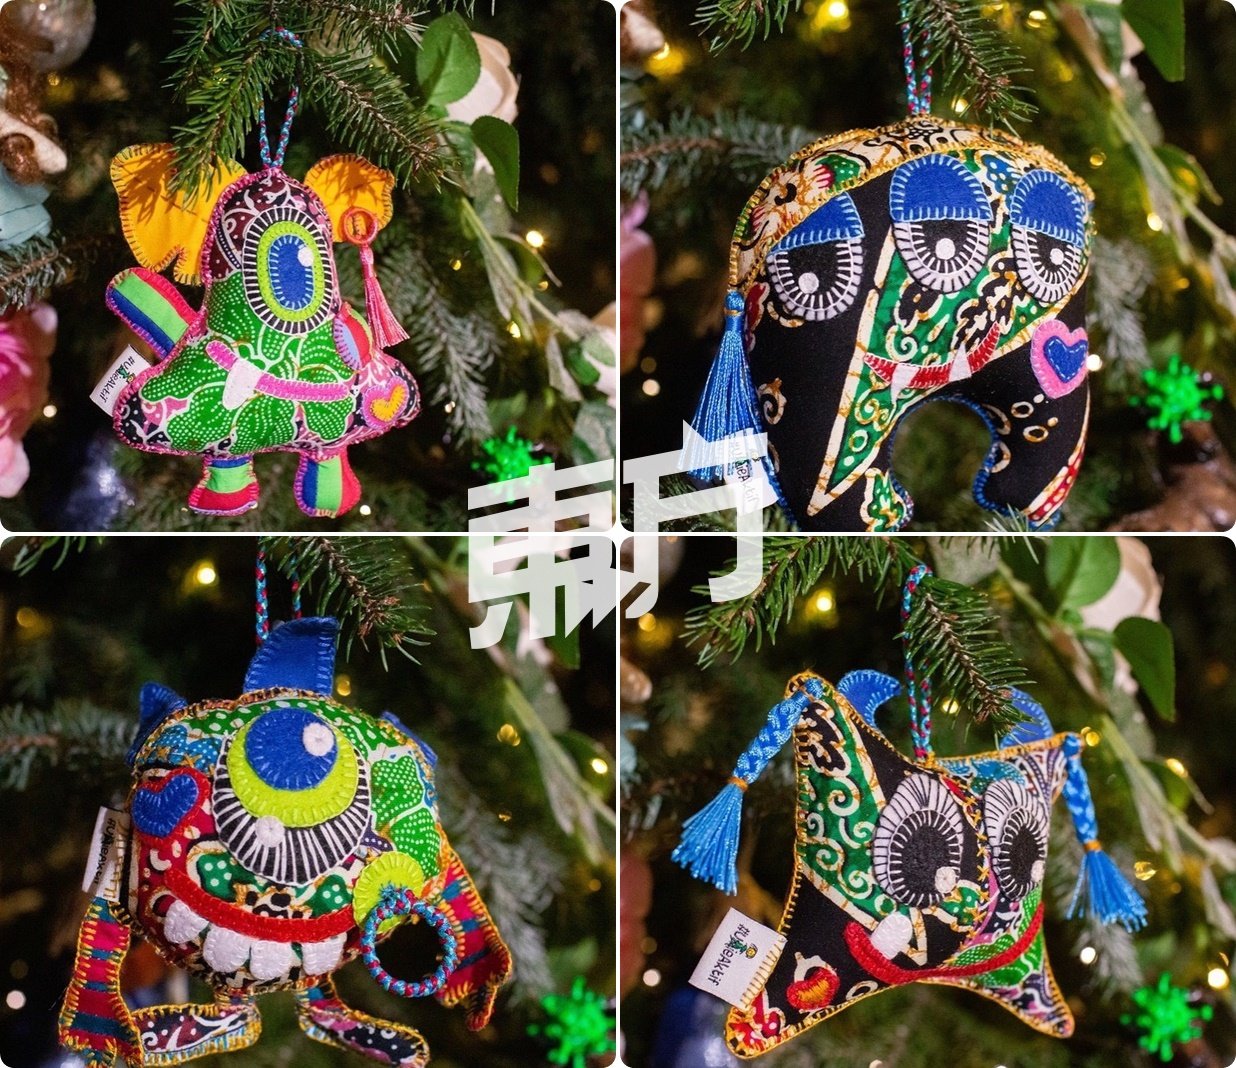 UmieAktif为比赛缝制的“爱心怪兽家族挂饰”，被展示在俄罗斯埃尔米塔日博物馆的圣诞树上，让更多人有机会看见极具大马特色的手工作品。